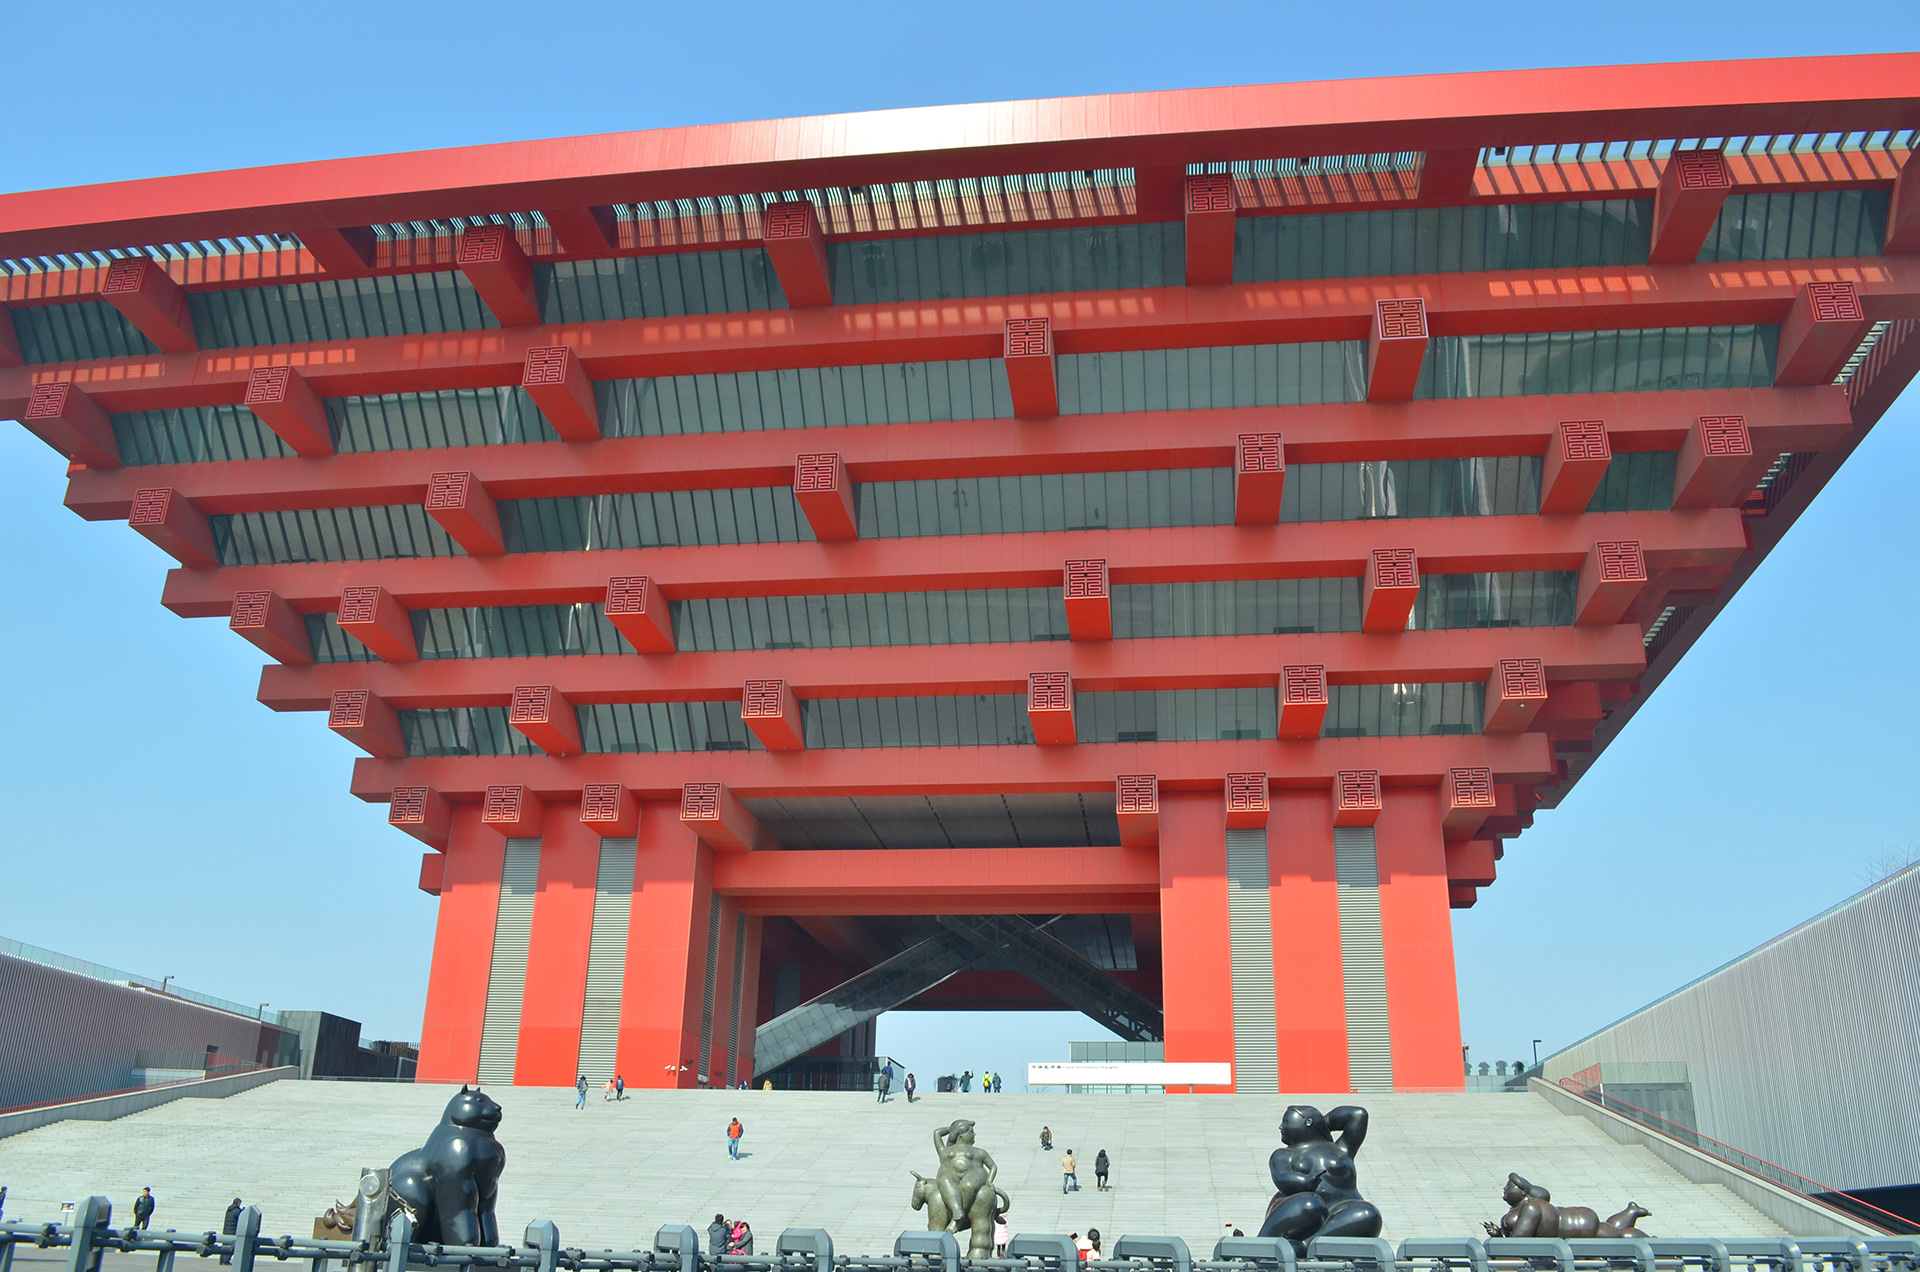 הפביליון של האקספו. מסמל את יכולותיה האדרכליות של סין לצד חיבורה להיסטוריה (צילום: נוגה פייגה)